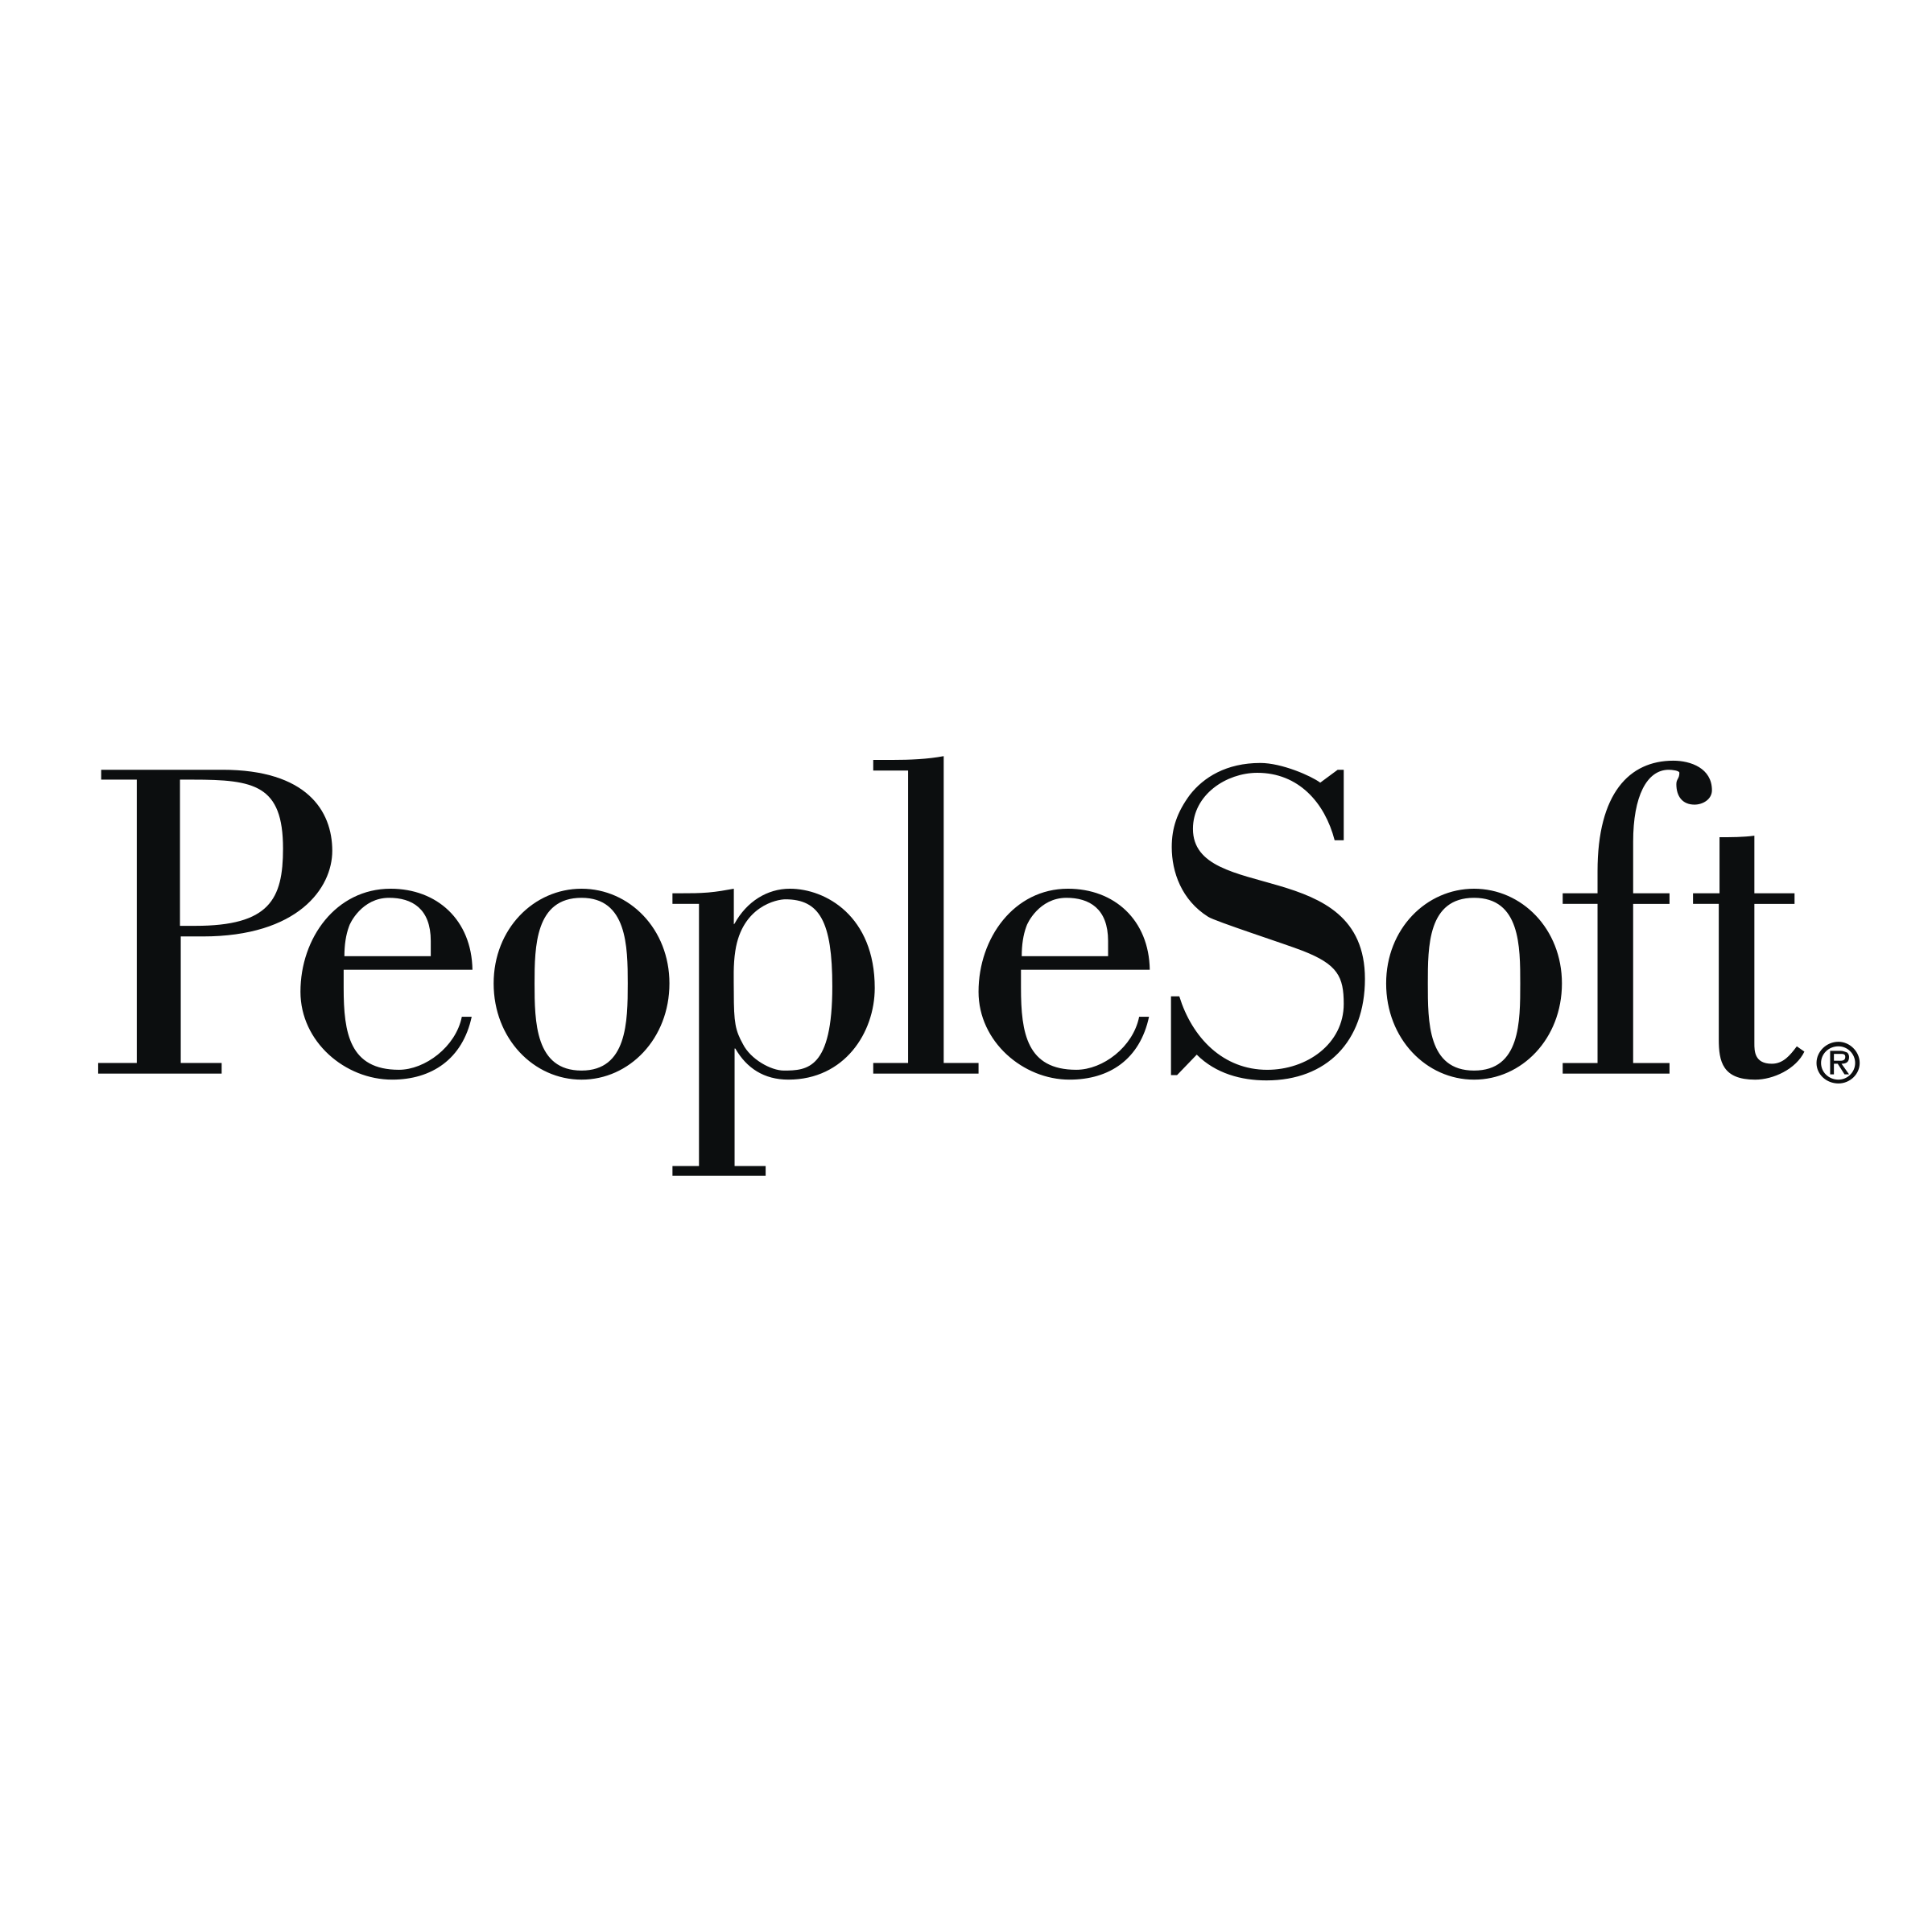 Peoplsoft Logo - PeopleSoft Logo PNG Transparent & SVG Vector - Freebie Supply